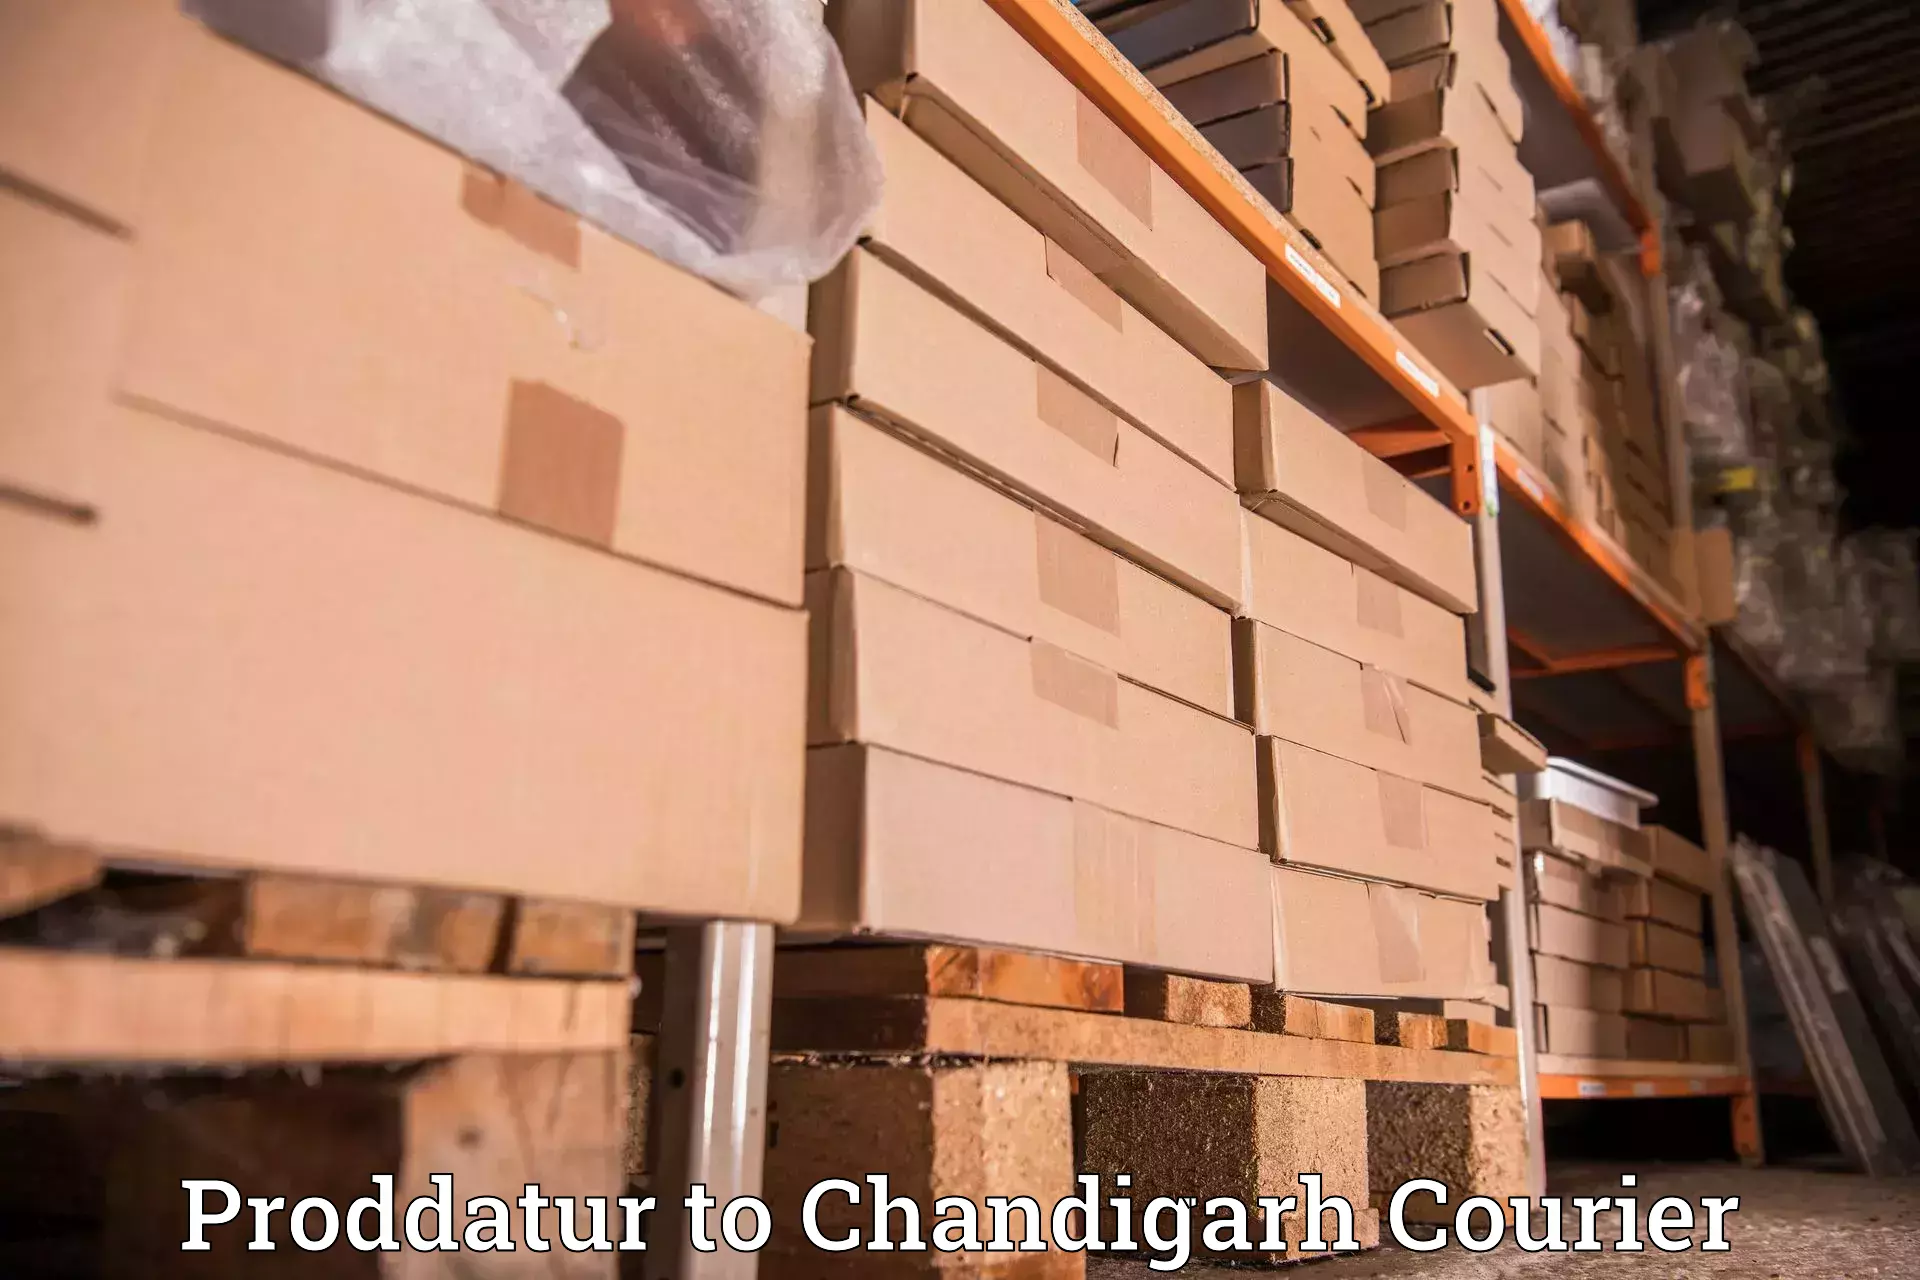 Efficient freight service Proddatur to Chandigarh